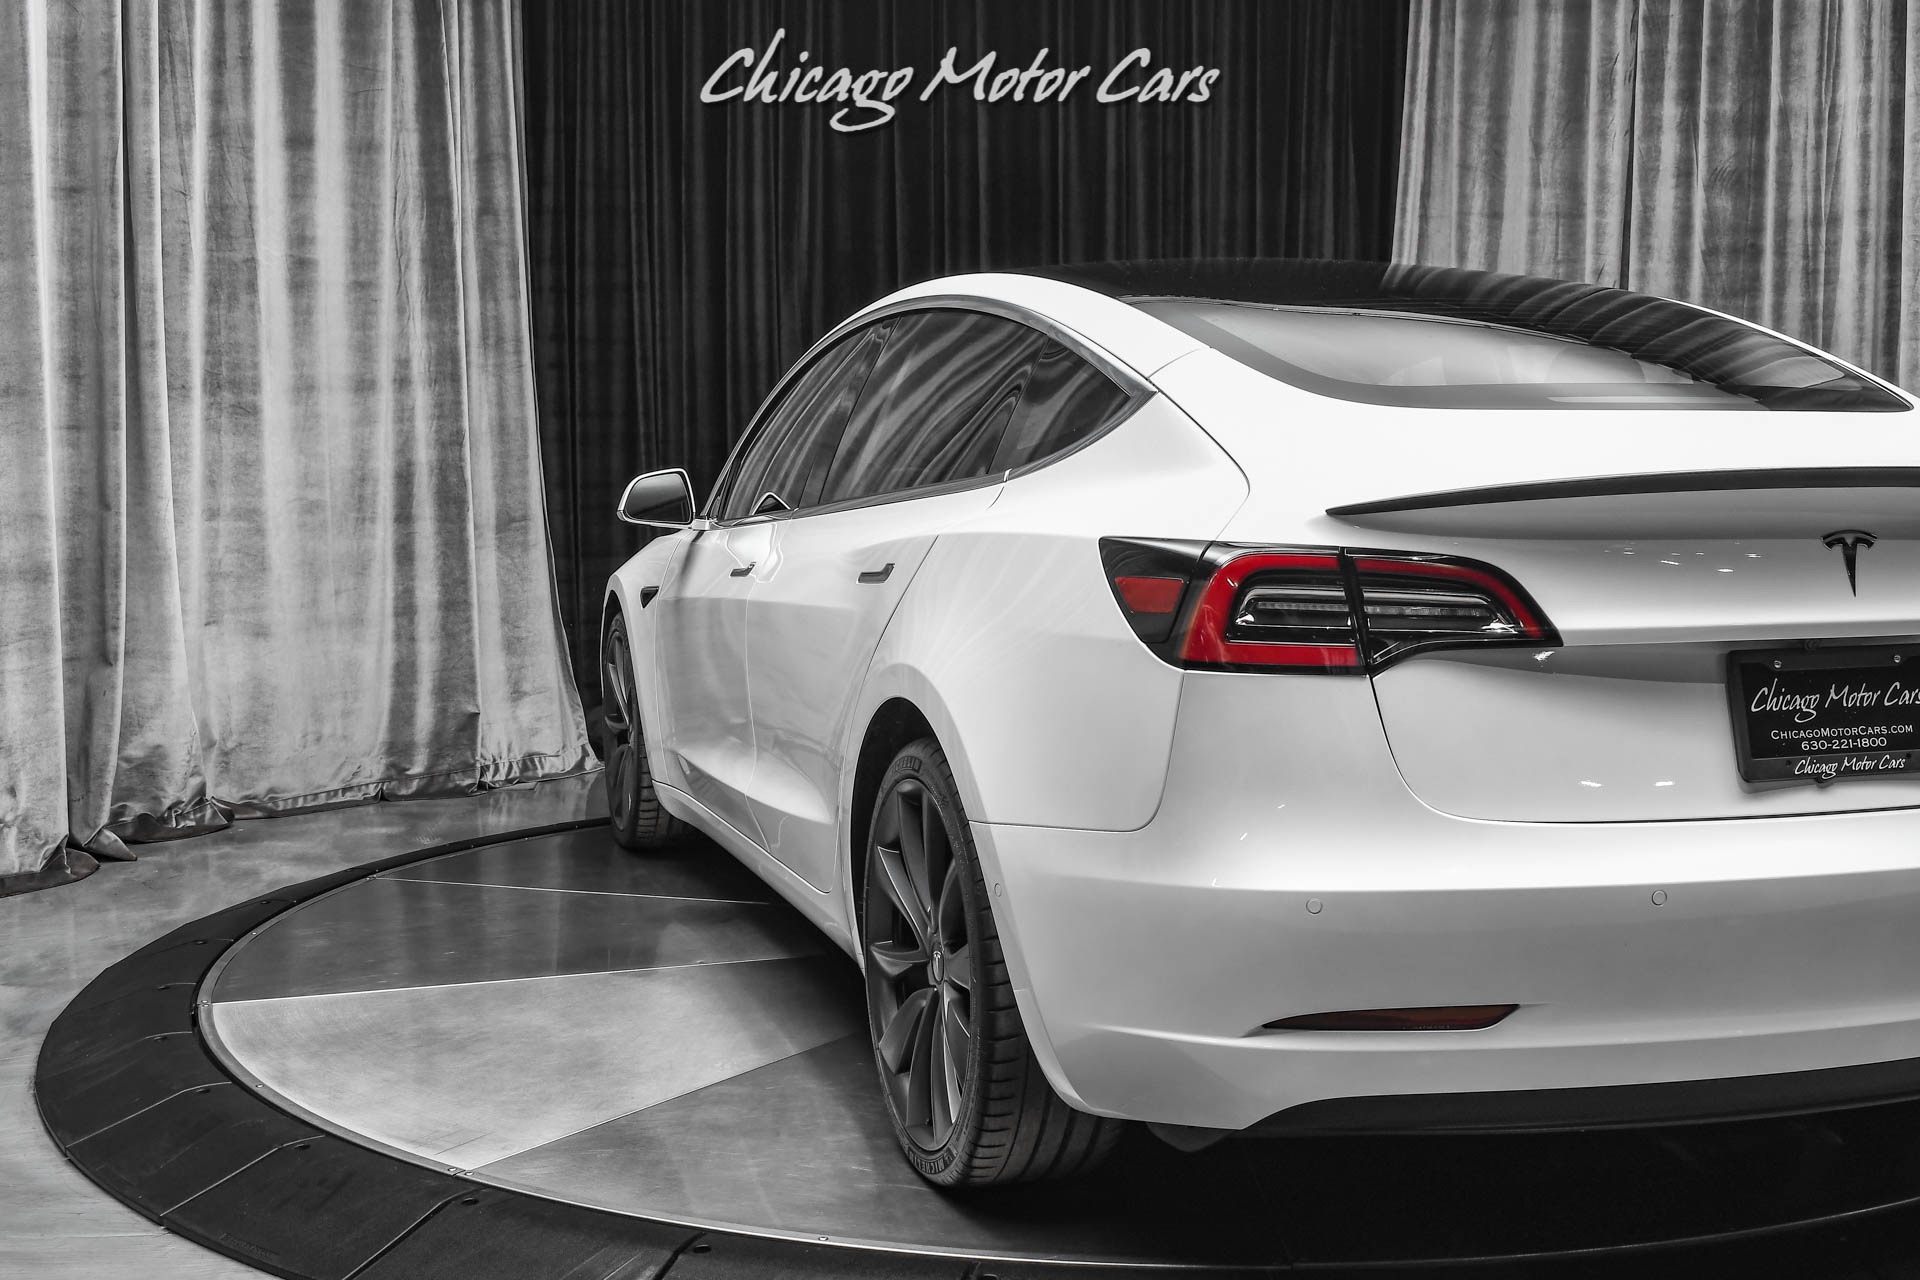 Used-2020-Tesla-Model-3-Performance-AWD-Sedan-12K-Full-Self-Driving-PACK-ONLY-4K-MILES